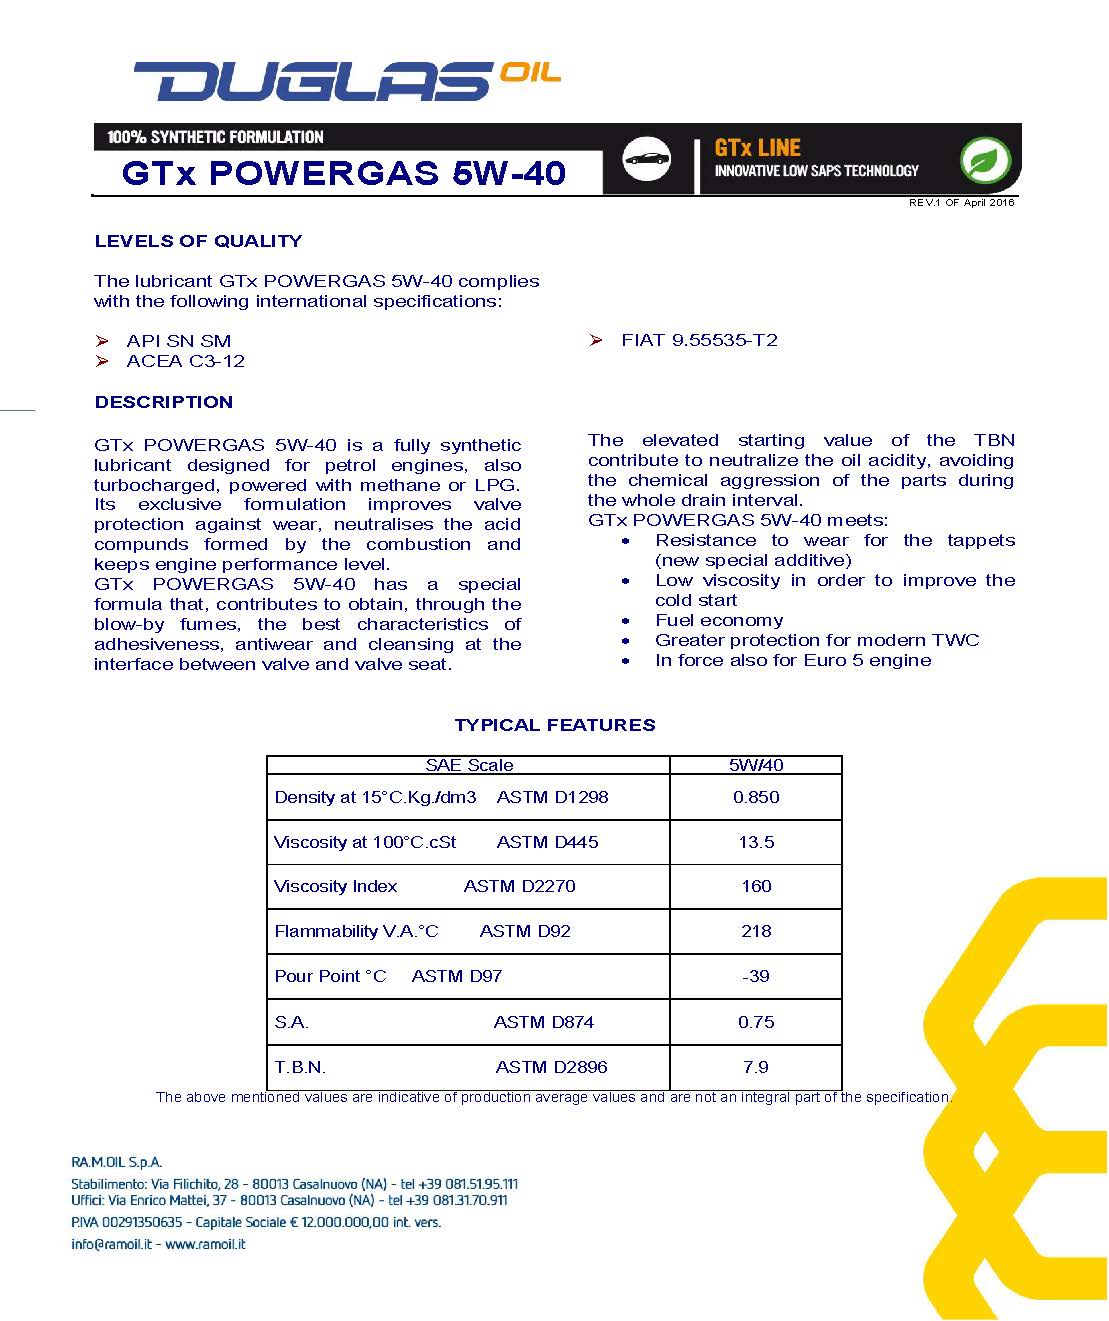 GTx-POWERGAS-5W-40-R.01-en